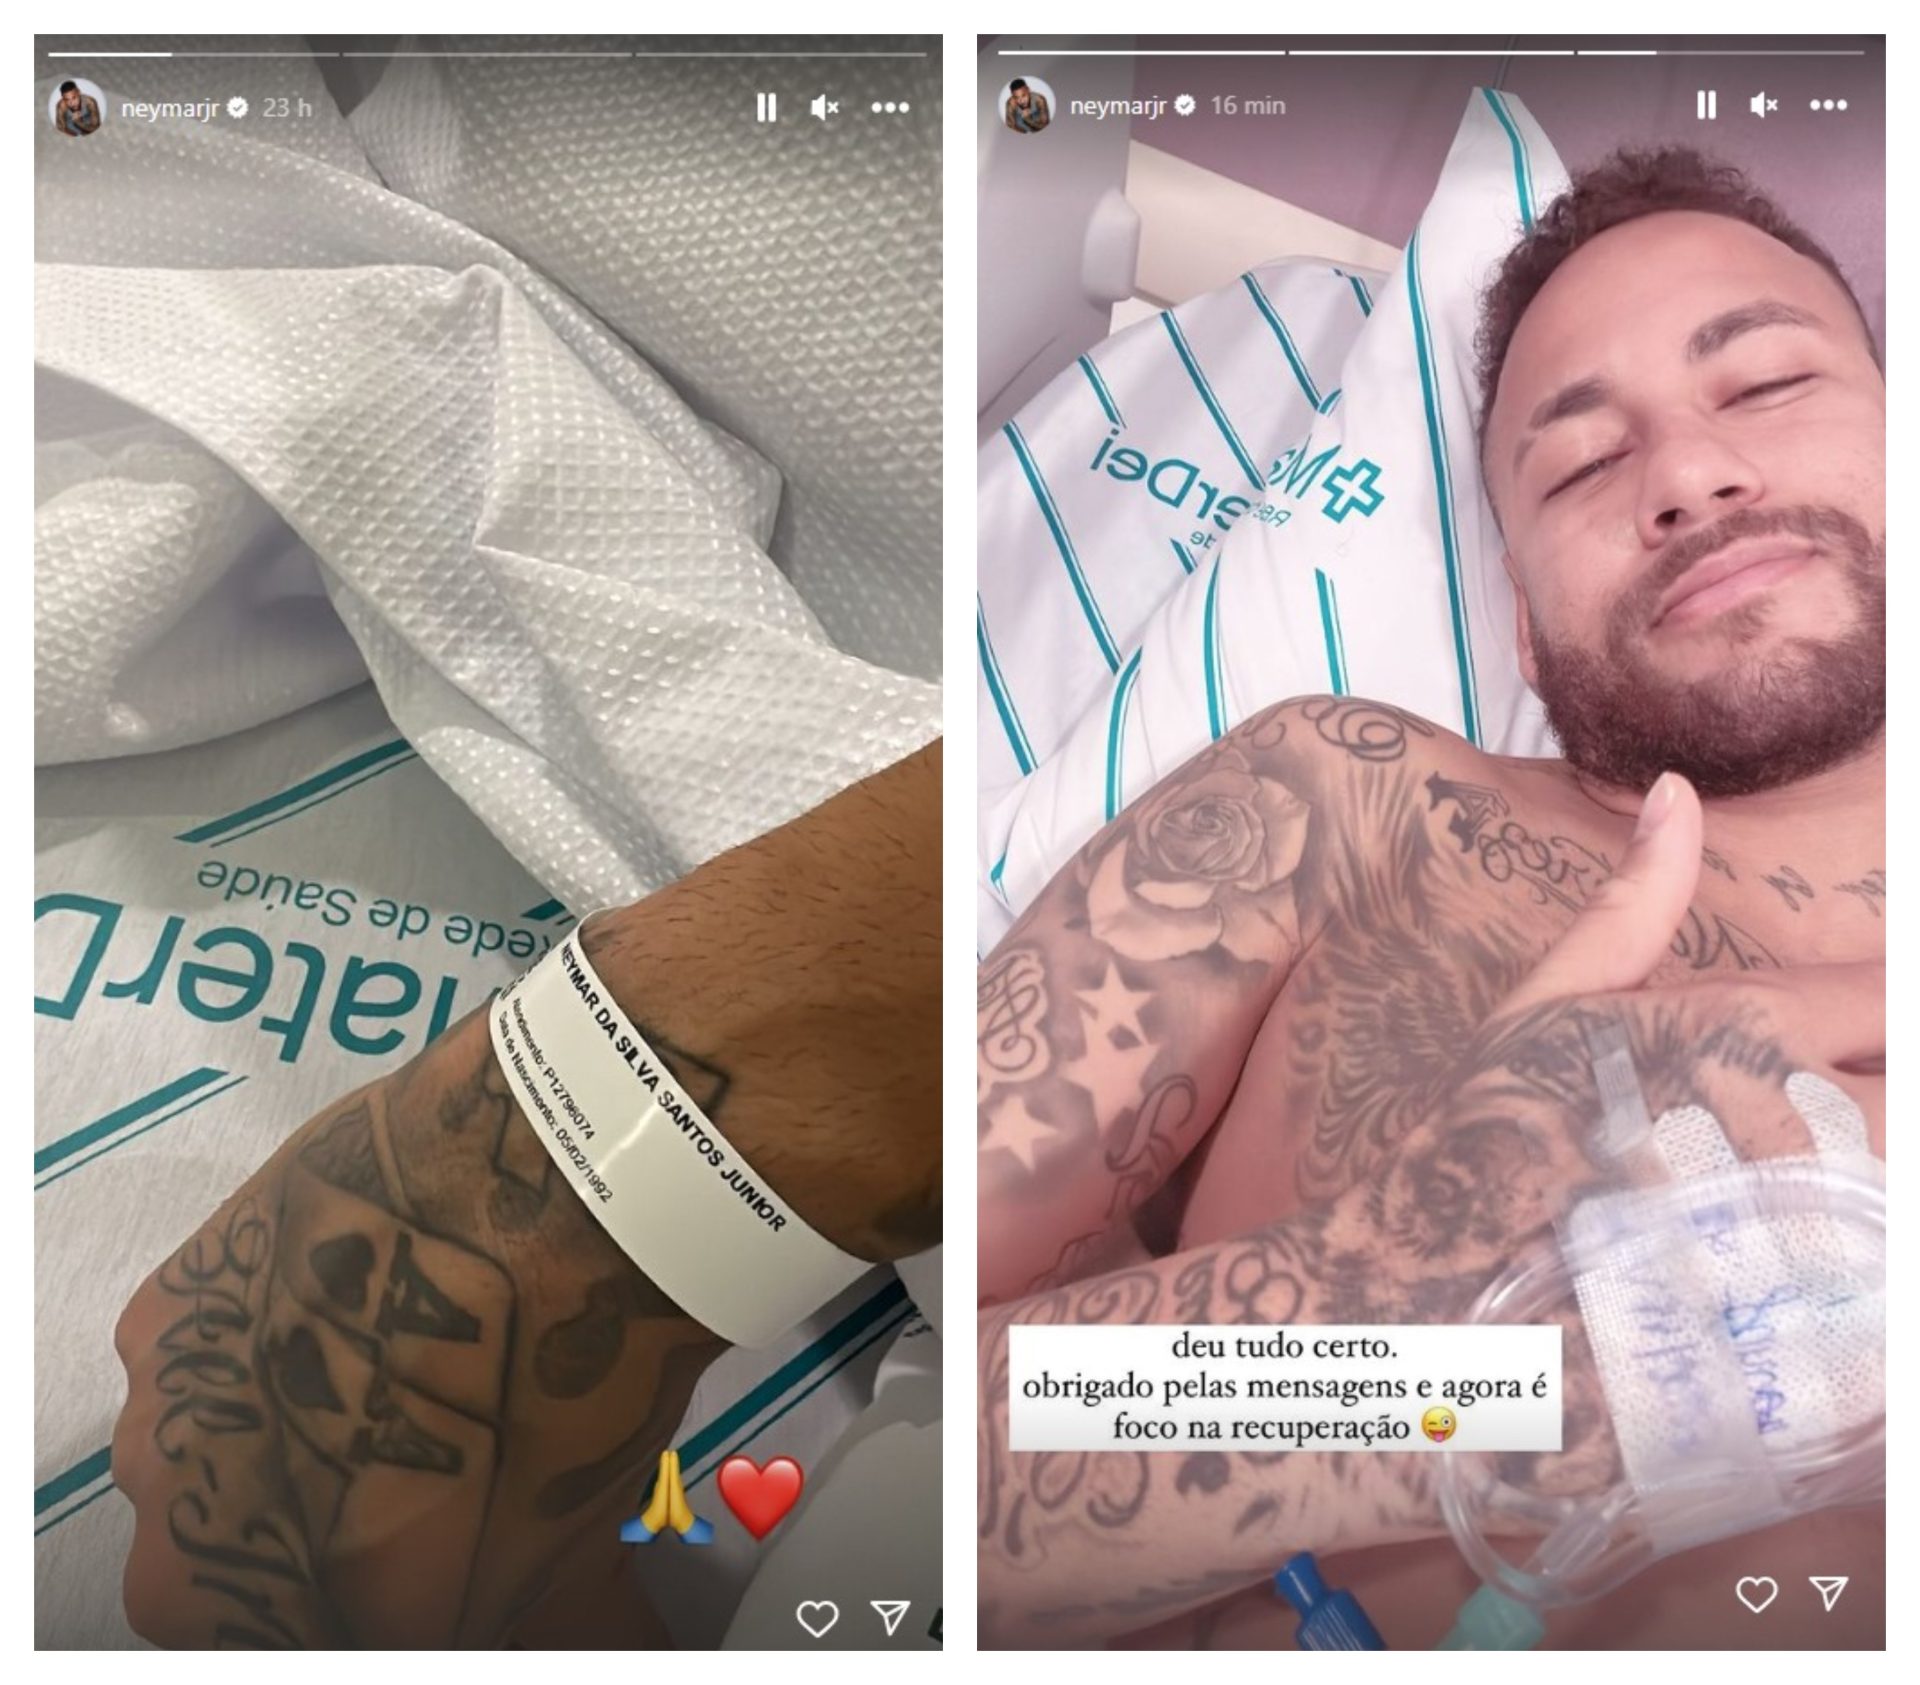 Neymar compartilhou sentimentos com seguidores antes e depois do procedimento - Foto: Reprodução/Instagram @neymarjr